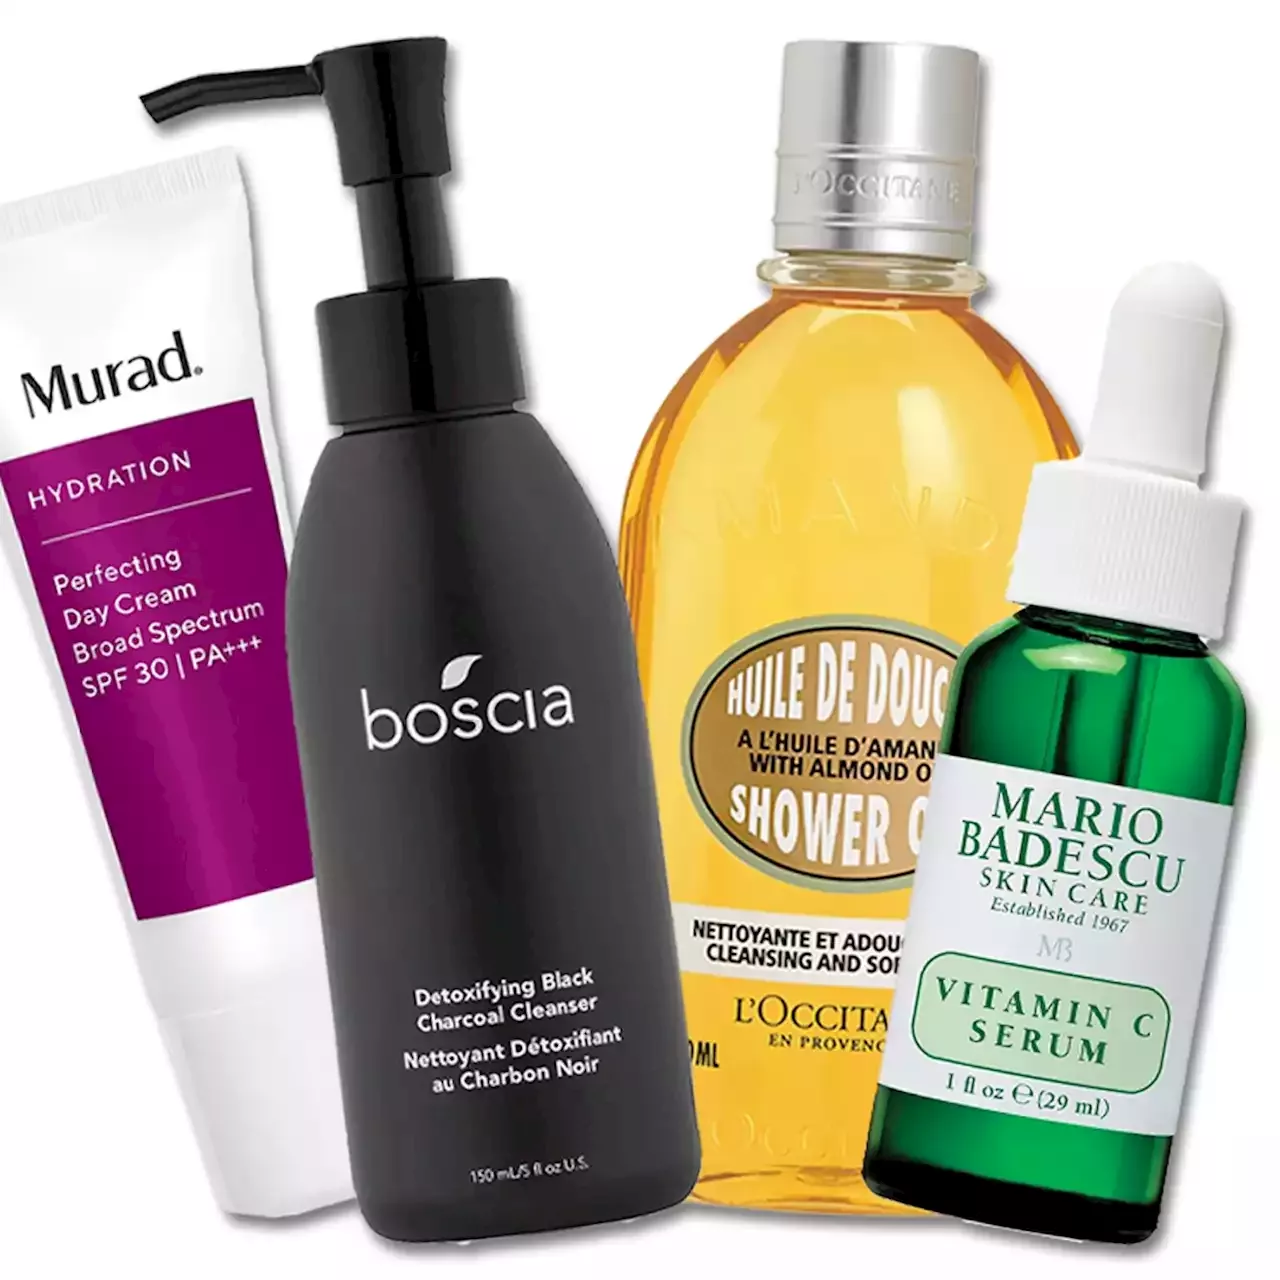 Ulta Skincare Deals Starting at $13: Save 50% On Murad, Boscia, Mario Badescu, & L'Occitane - E! Online